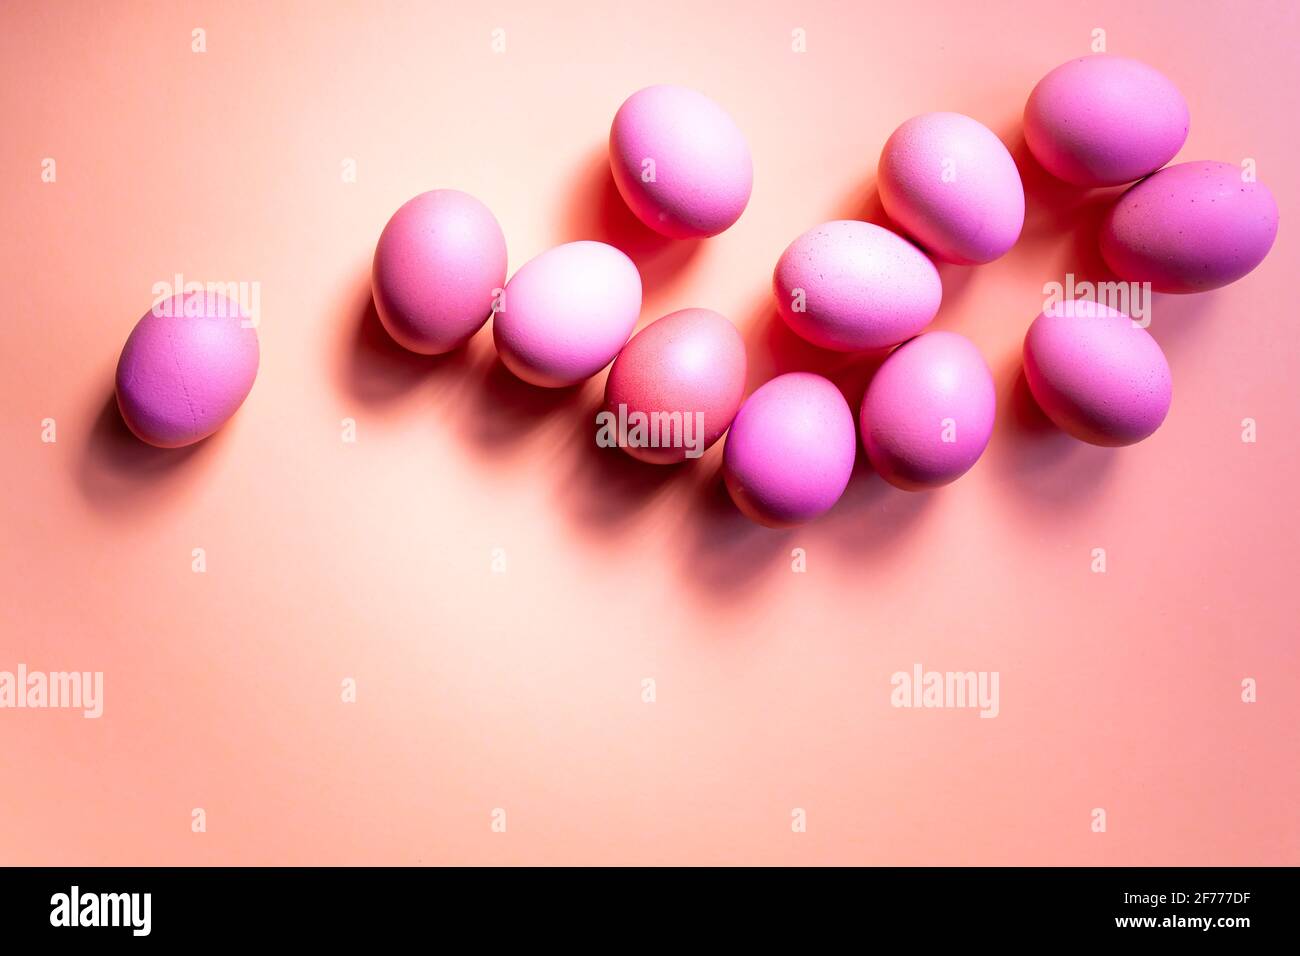 Groupe d'œufs roses isolés sur fond rouge. Concept de Pâques. Banque D'Images